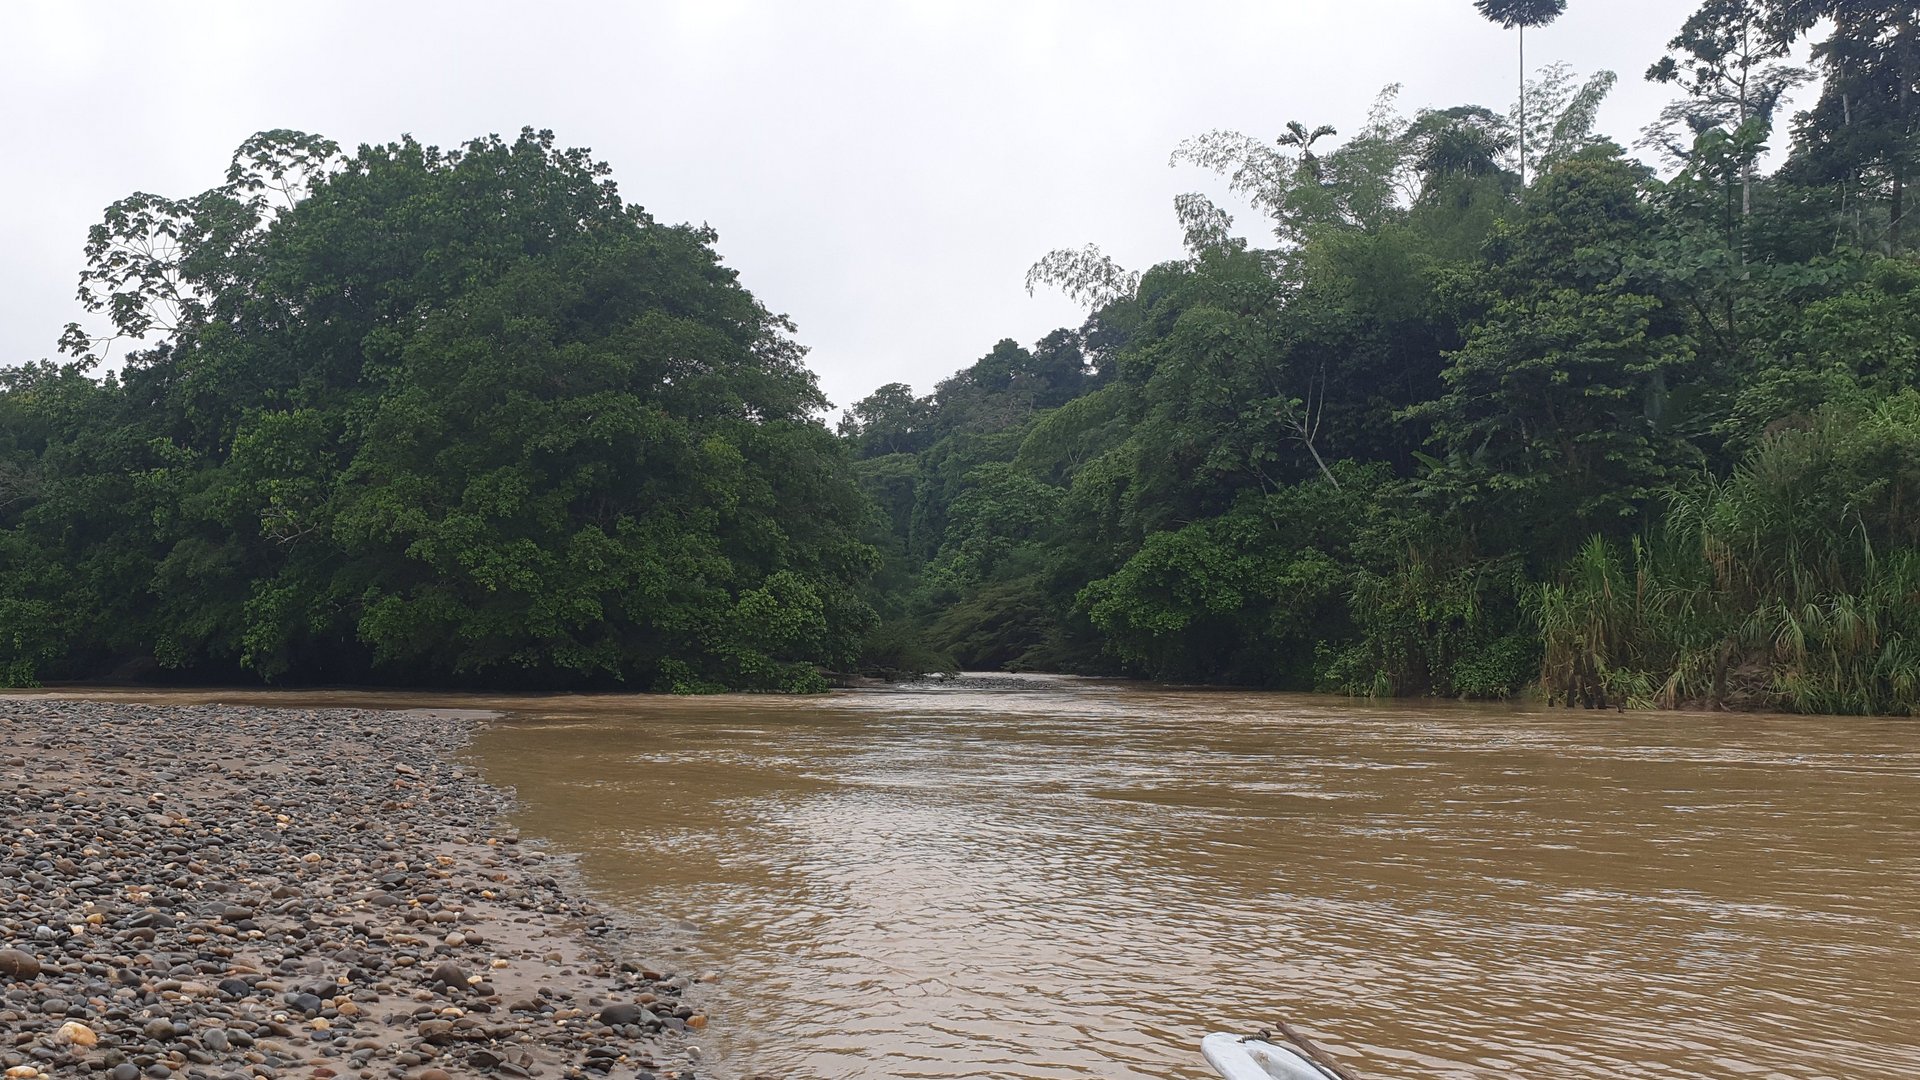 Der Amazonas der über ein steinige Flussbett fließt, am Rand des Flussbettes erhebt sich ein Regenwald.